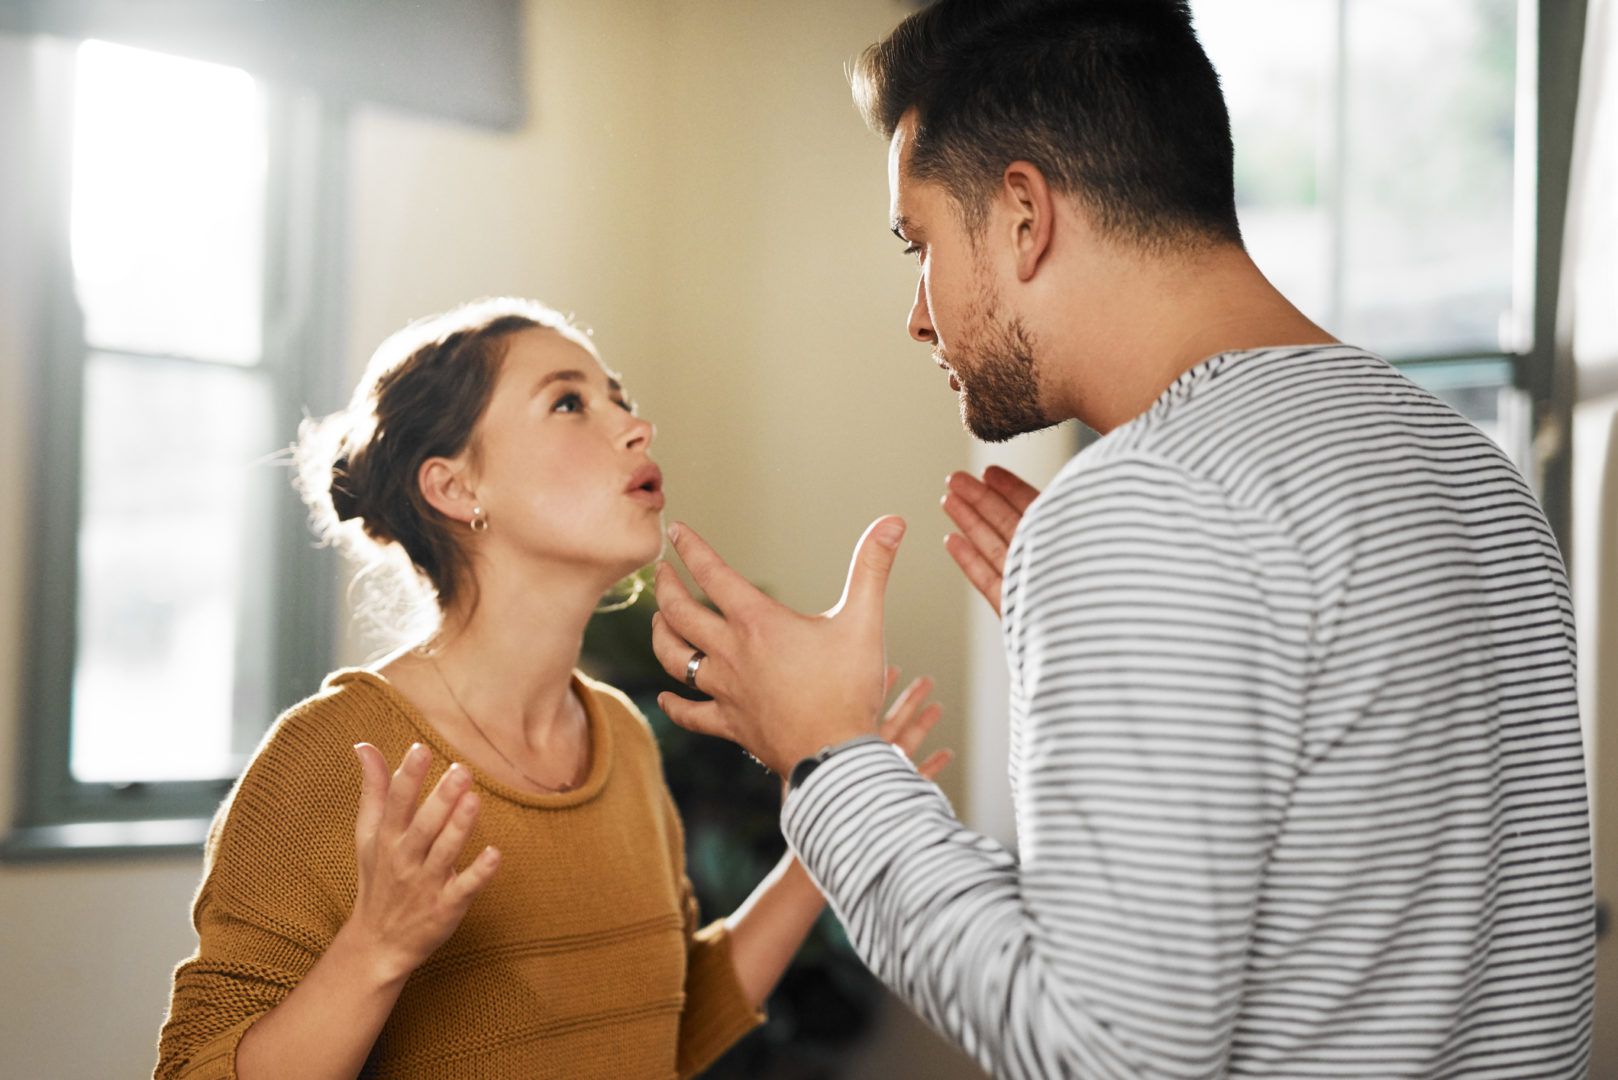 مردی که همسرش را دوست ندارد، ممکن است تغییرات قابل توجهی در رفتار و حالت روحی خود نشان دهد